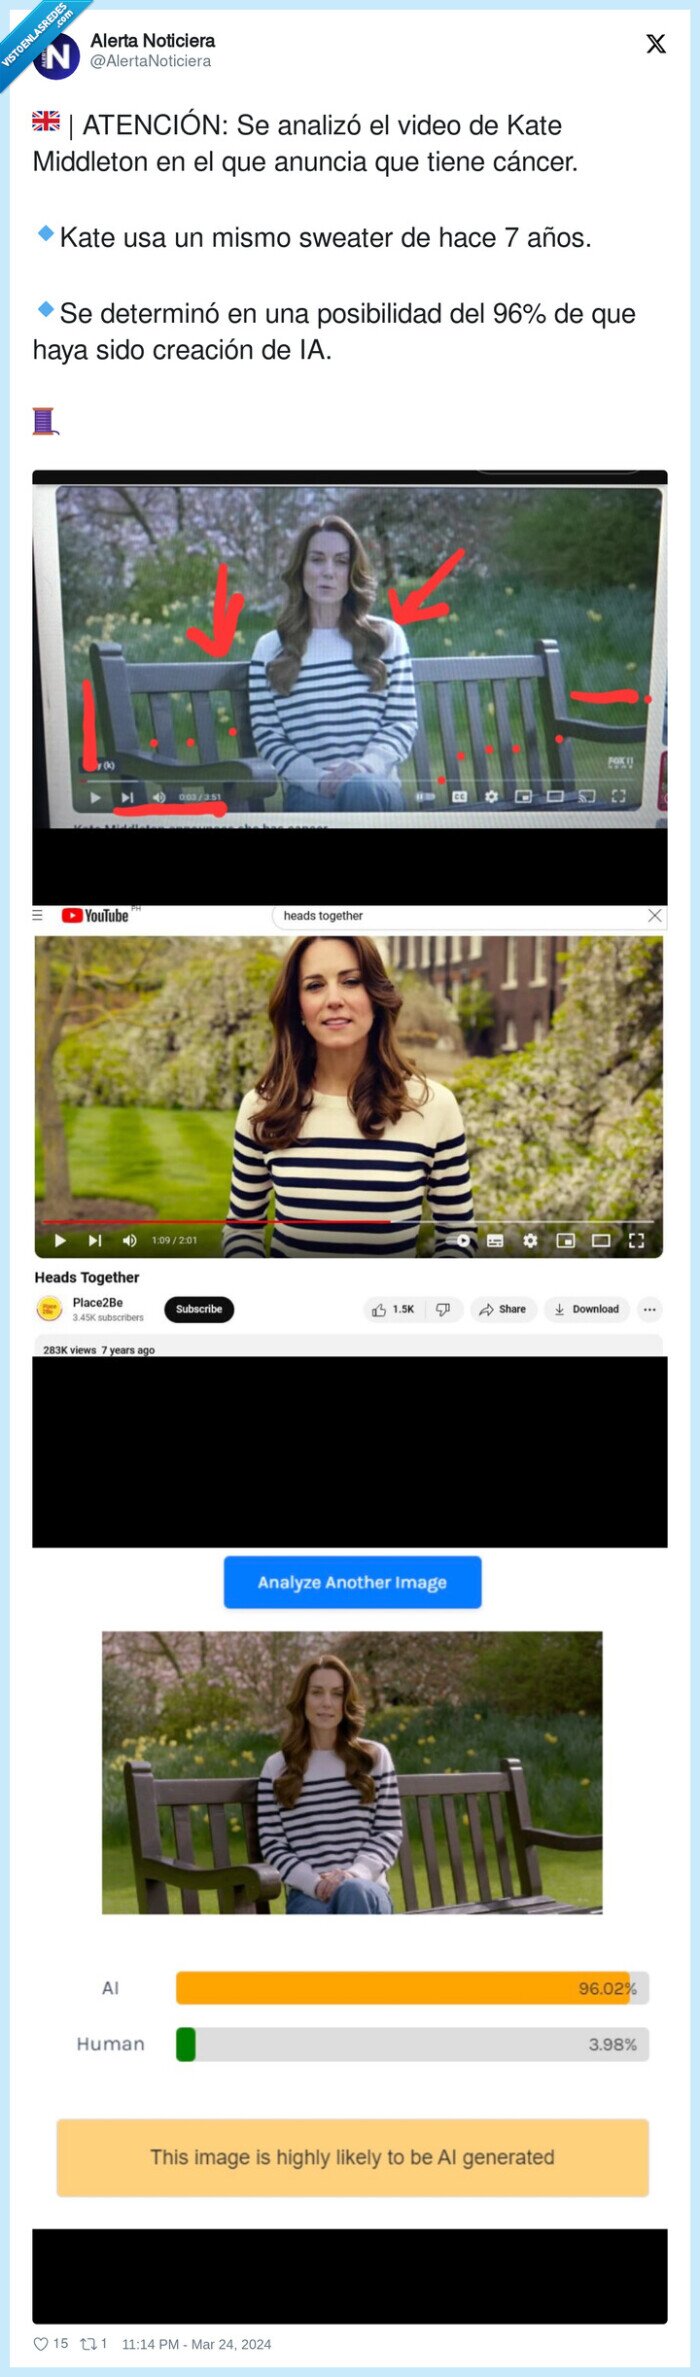 1553890 - Analizan el video de Kate Middleton en el que anuncia que tiene cáncer y es un WTF lo que descubren